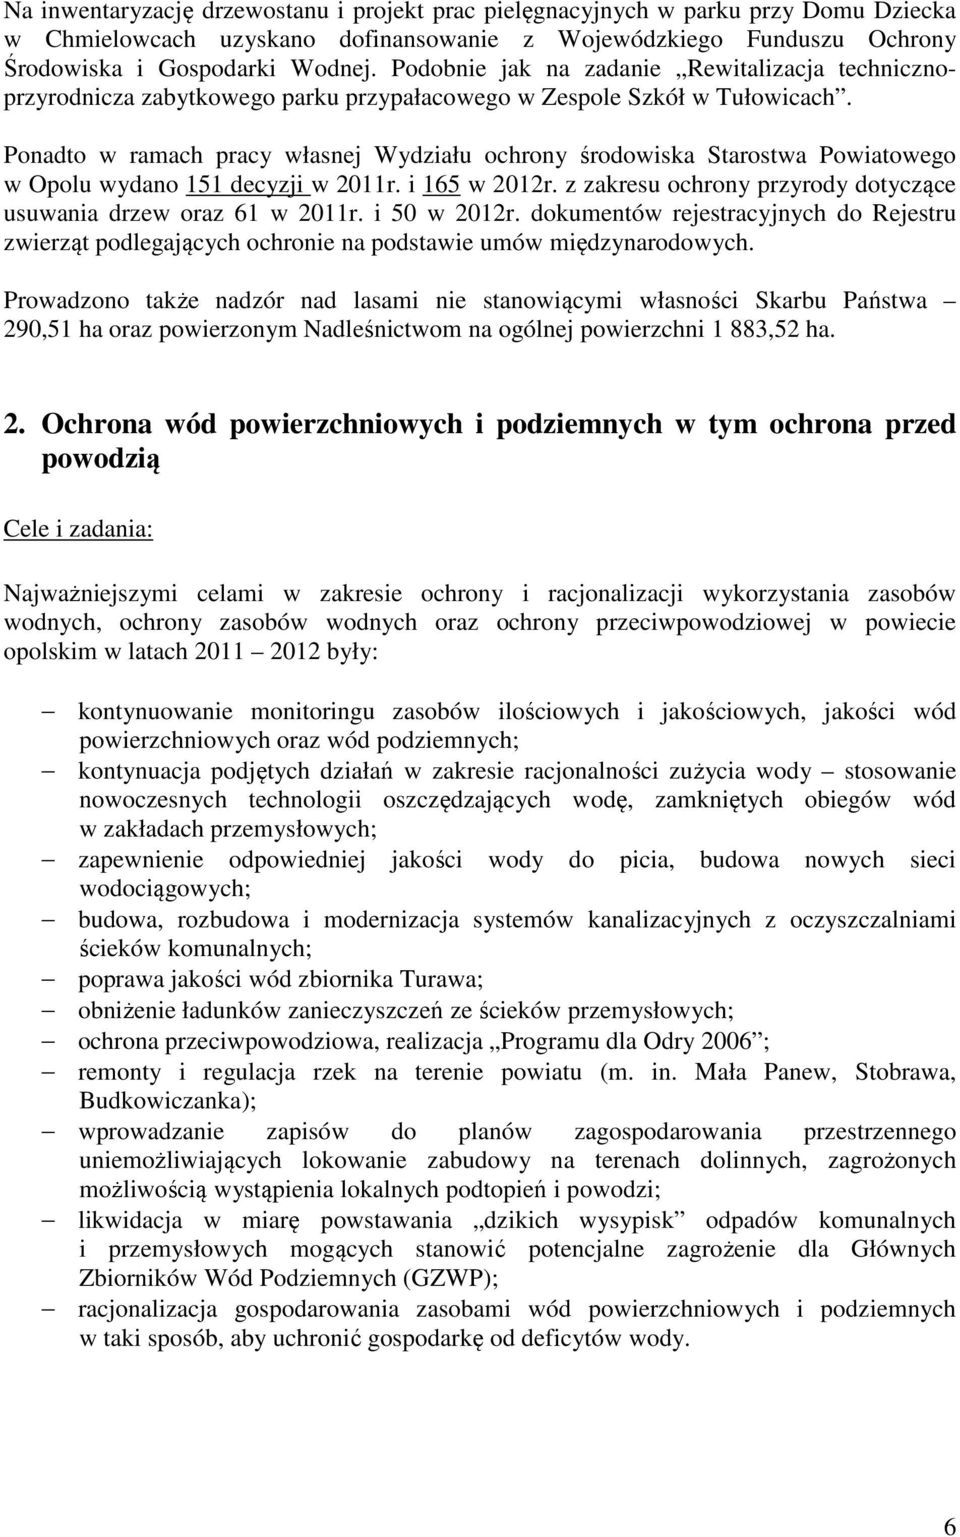 Ponadto w ramach pracy Wydziału ochrony środowiska Starostwa Powiatowego w Opolu wydano 151 decyzji w 2011r. i 165 w 2012r. z zakresu ochrony przyrody dotyczące usuwania drzew oraz 61 w 2011r.